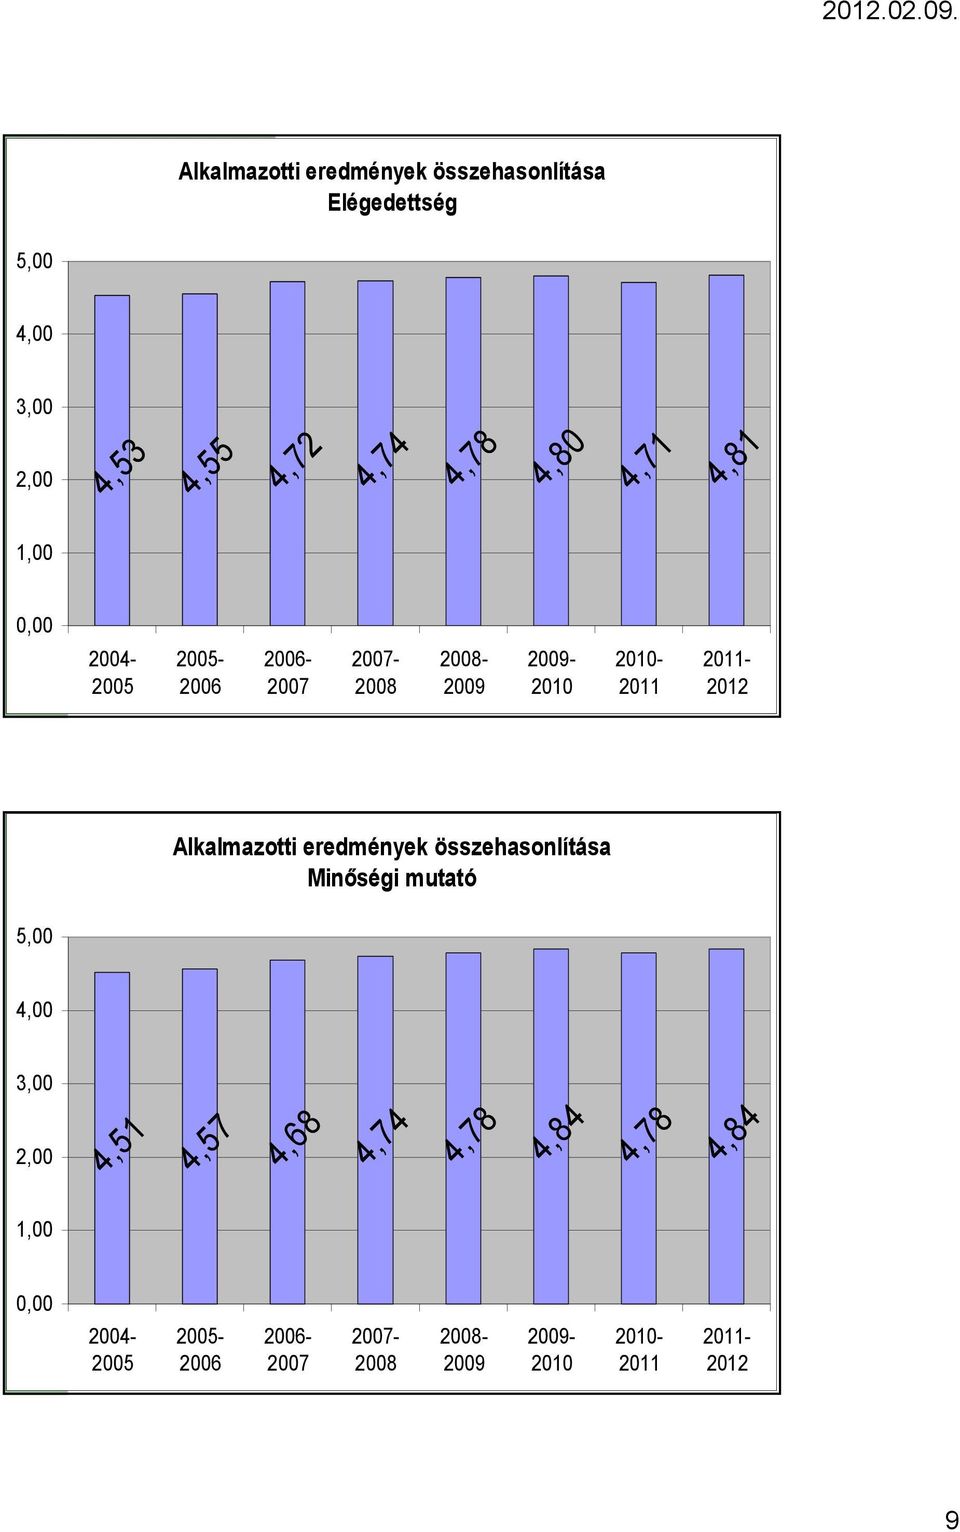 2011-2012 Alkalmazotti eredmények összehasonlítása Minıségi mutató 4,51 4,57 4,68 4,74